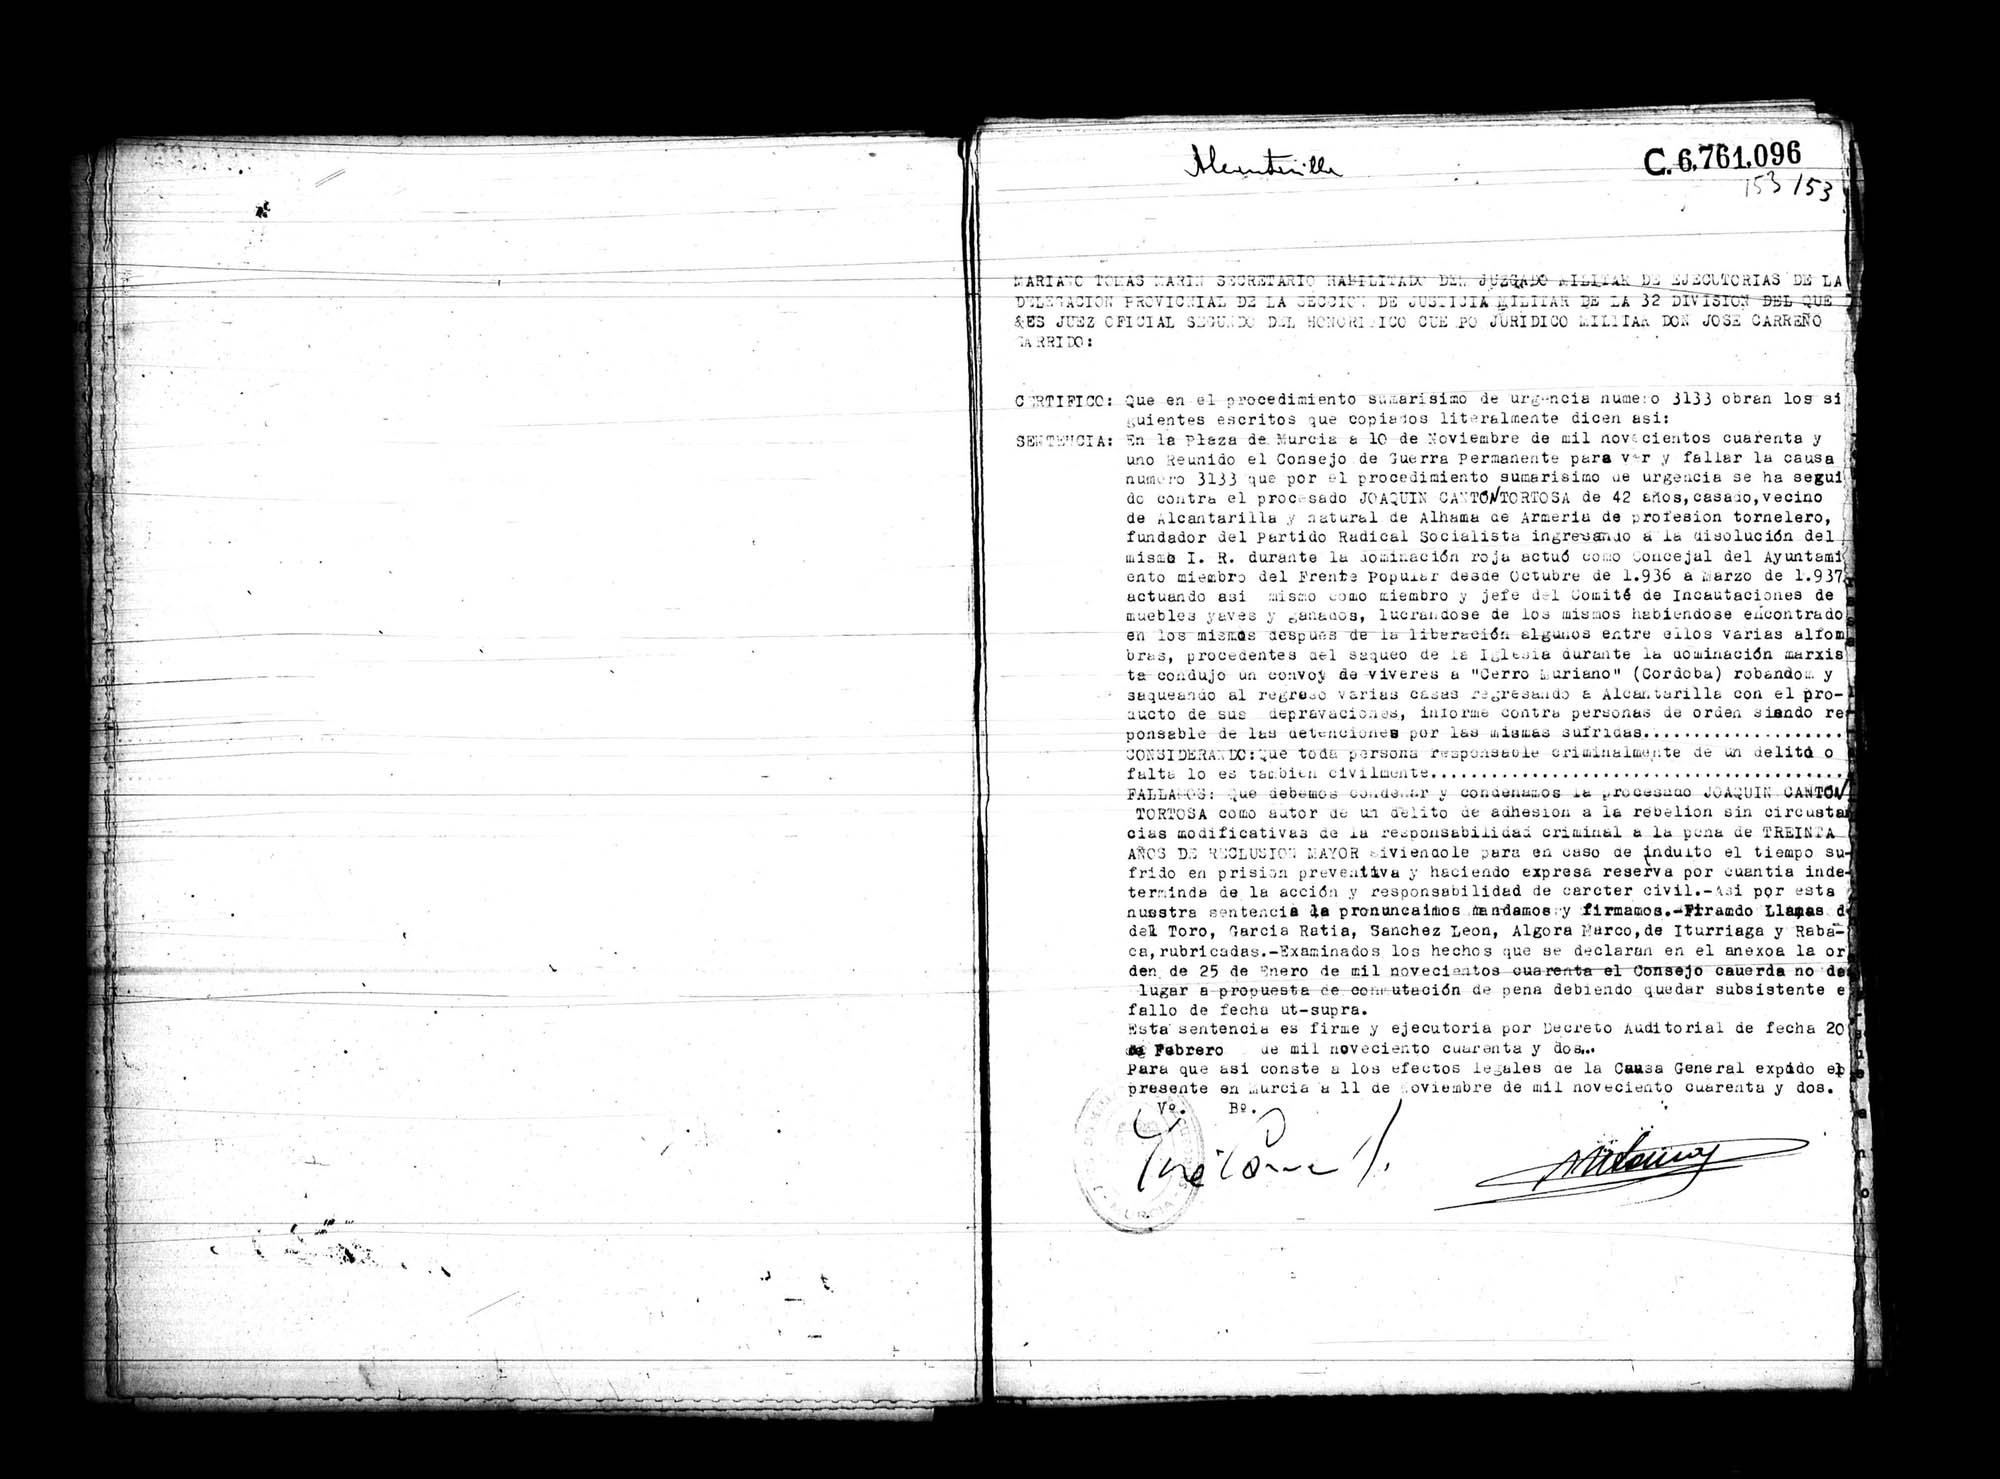 Certificado de la sentencia pronunciada contra Joaquín Cantó Tortosa, causa 3133, el 10 de noviembre de 1941 en Murcia.